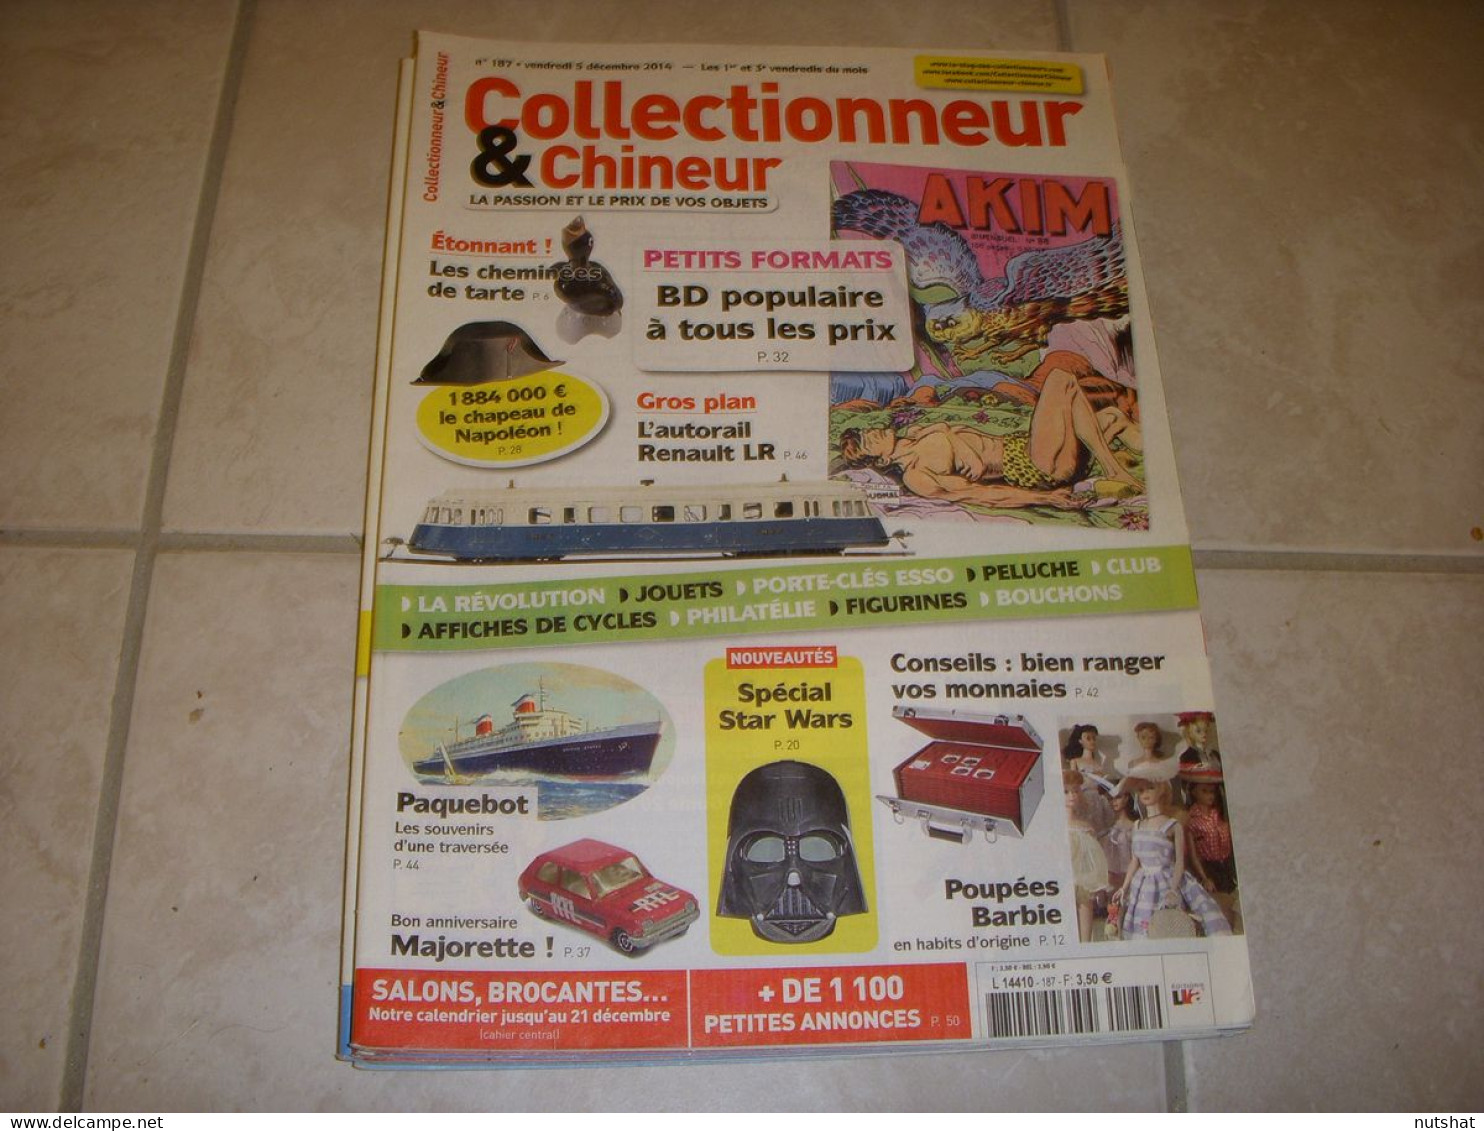 COLLECTIONNEUR CHINEUR 187 05.12.2014 AUTORAIL RENAULT MAJORETTE POUPEE BARBIE - Collectors